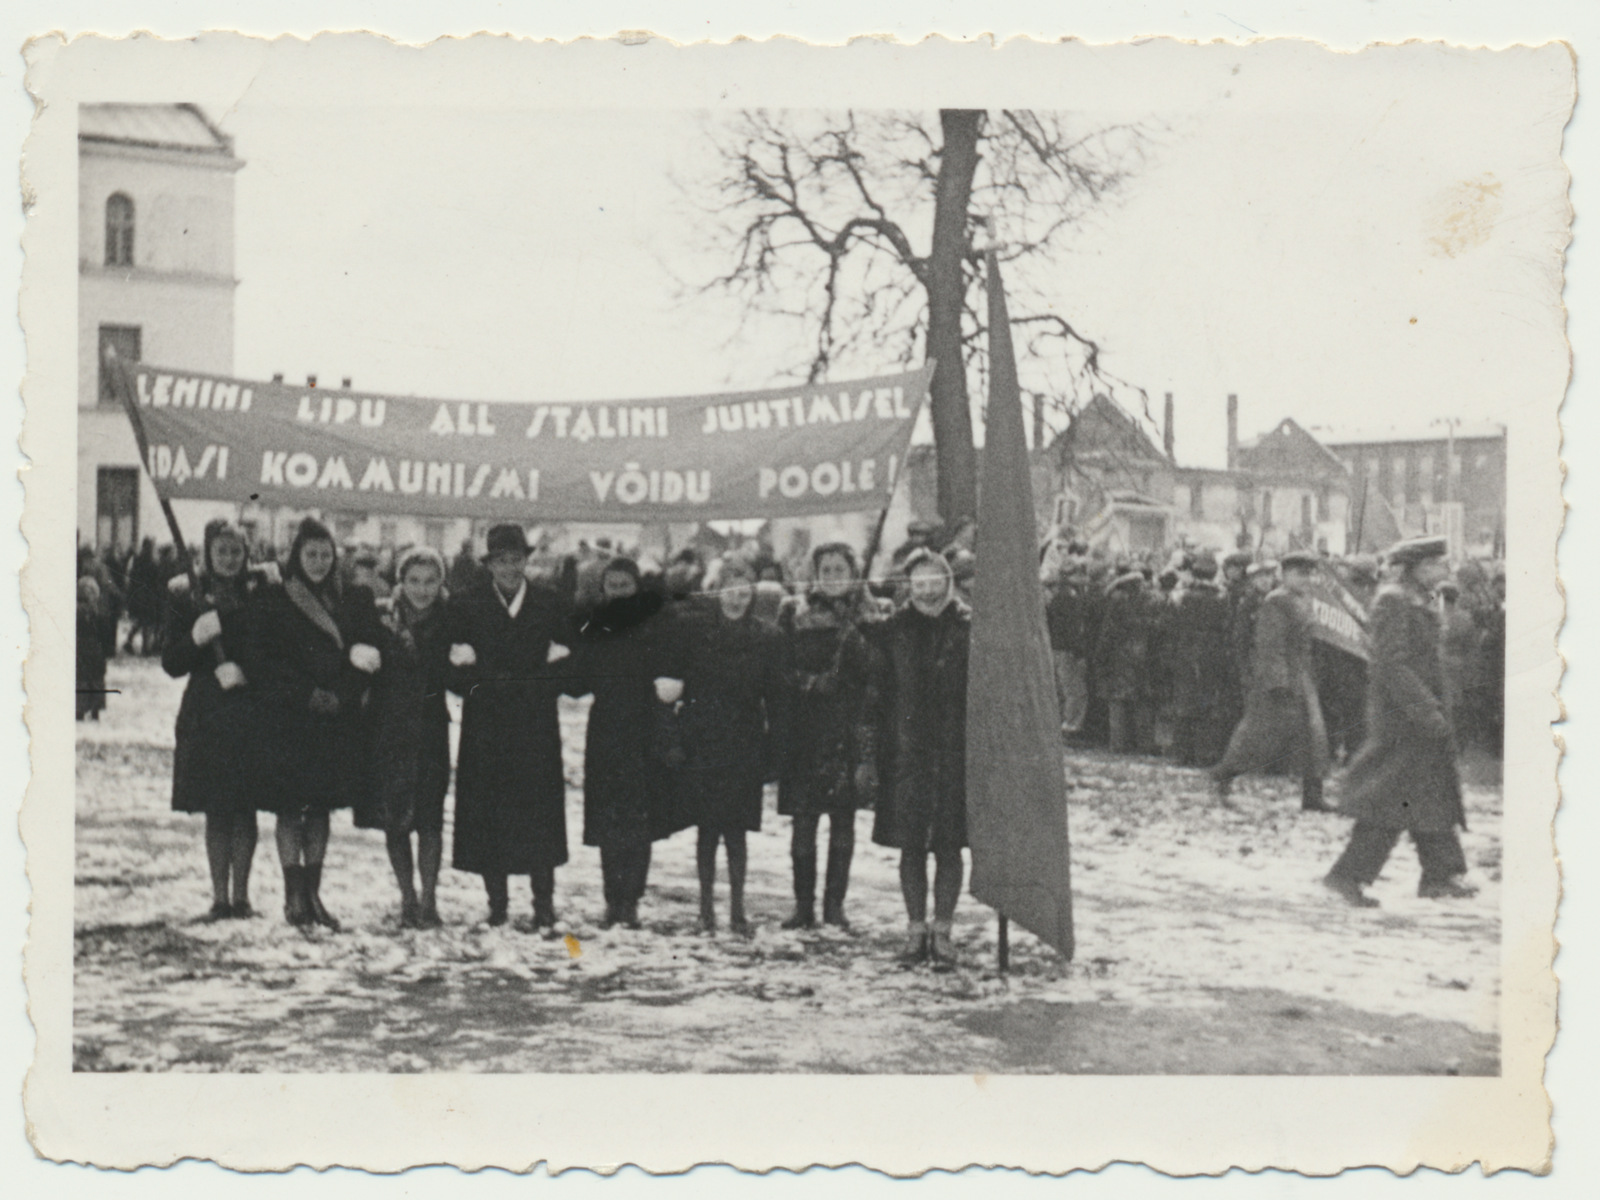 foto, Viljandi, raekoja esine, oktoobrimiiting, loosungid, 1948